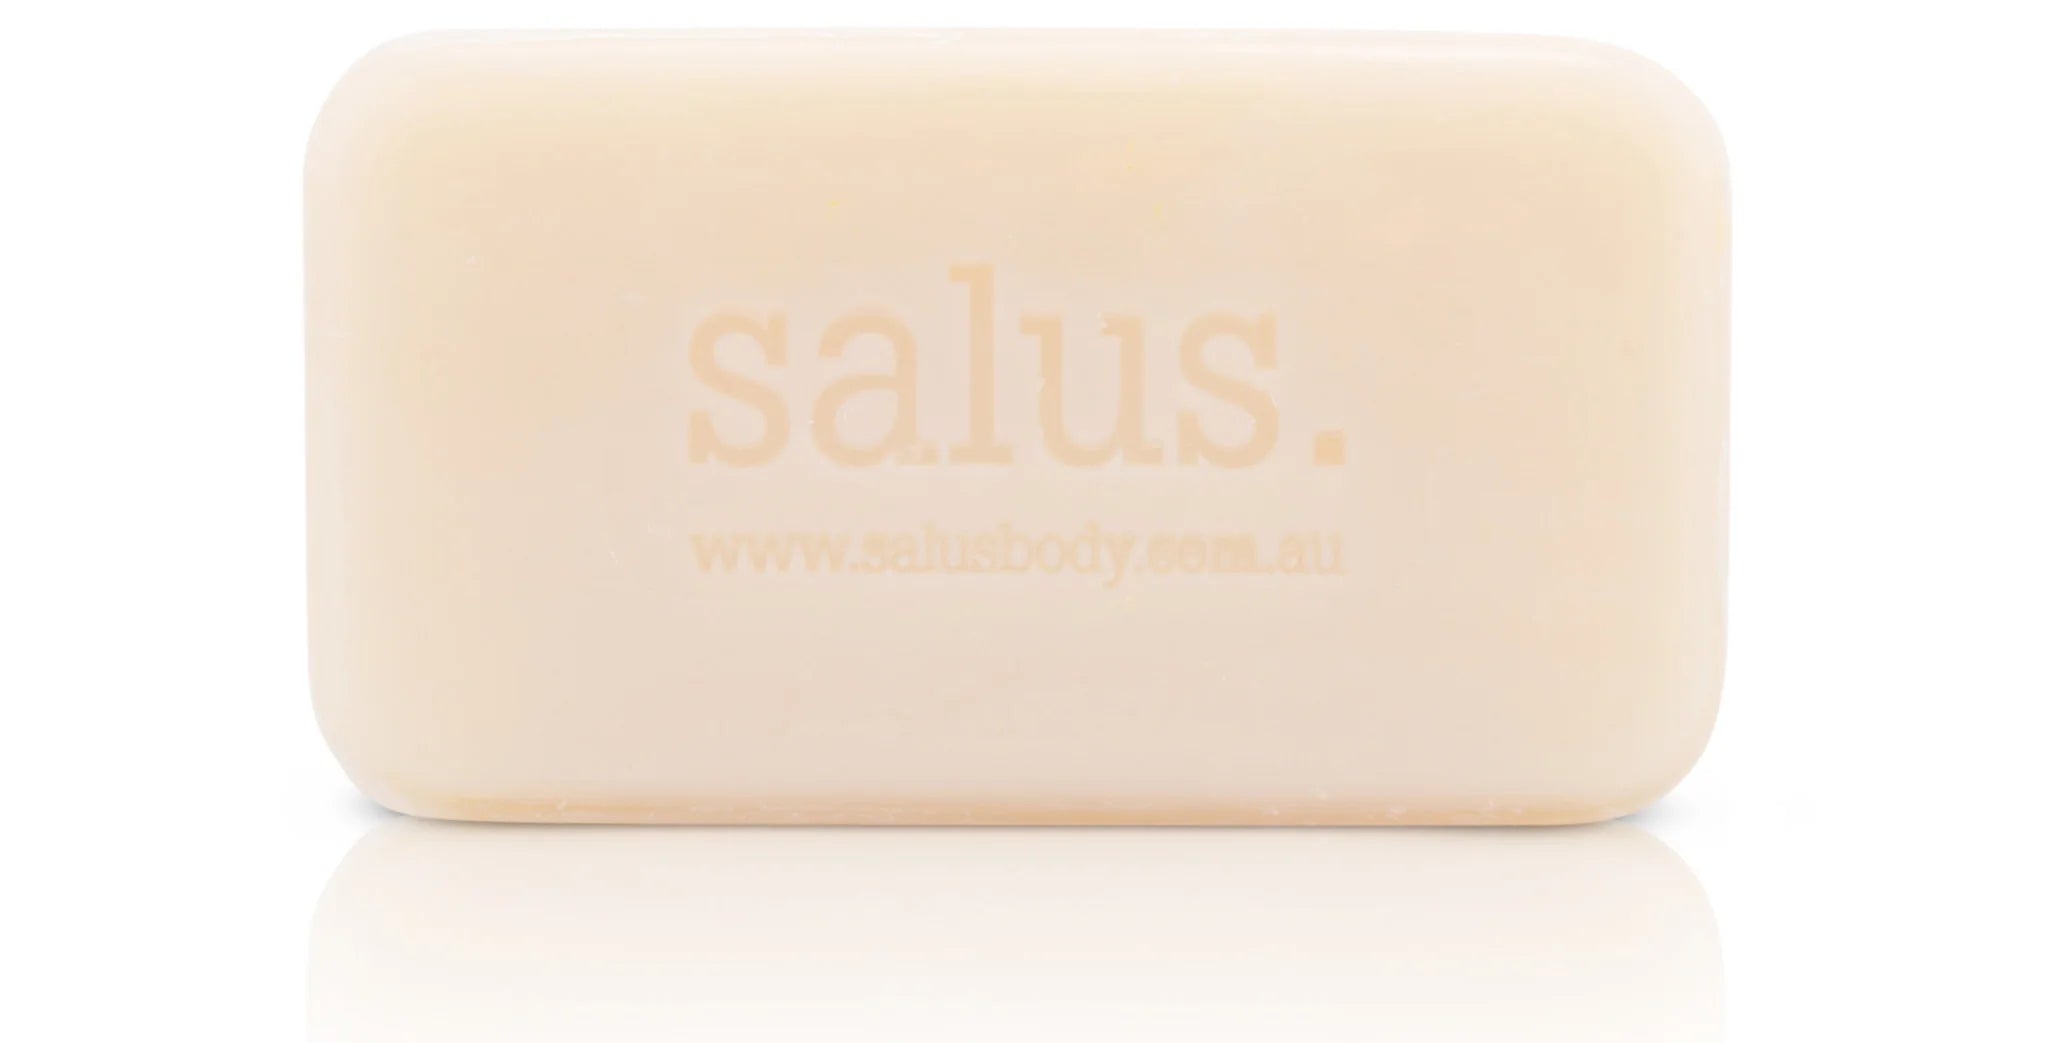 Salus Eucalyptus Soap